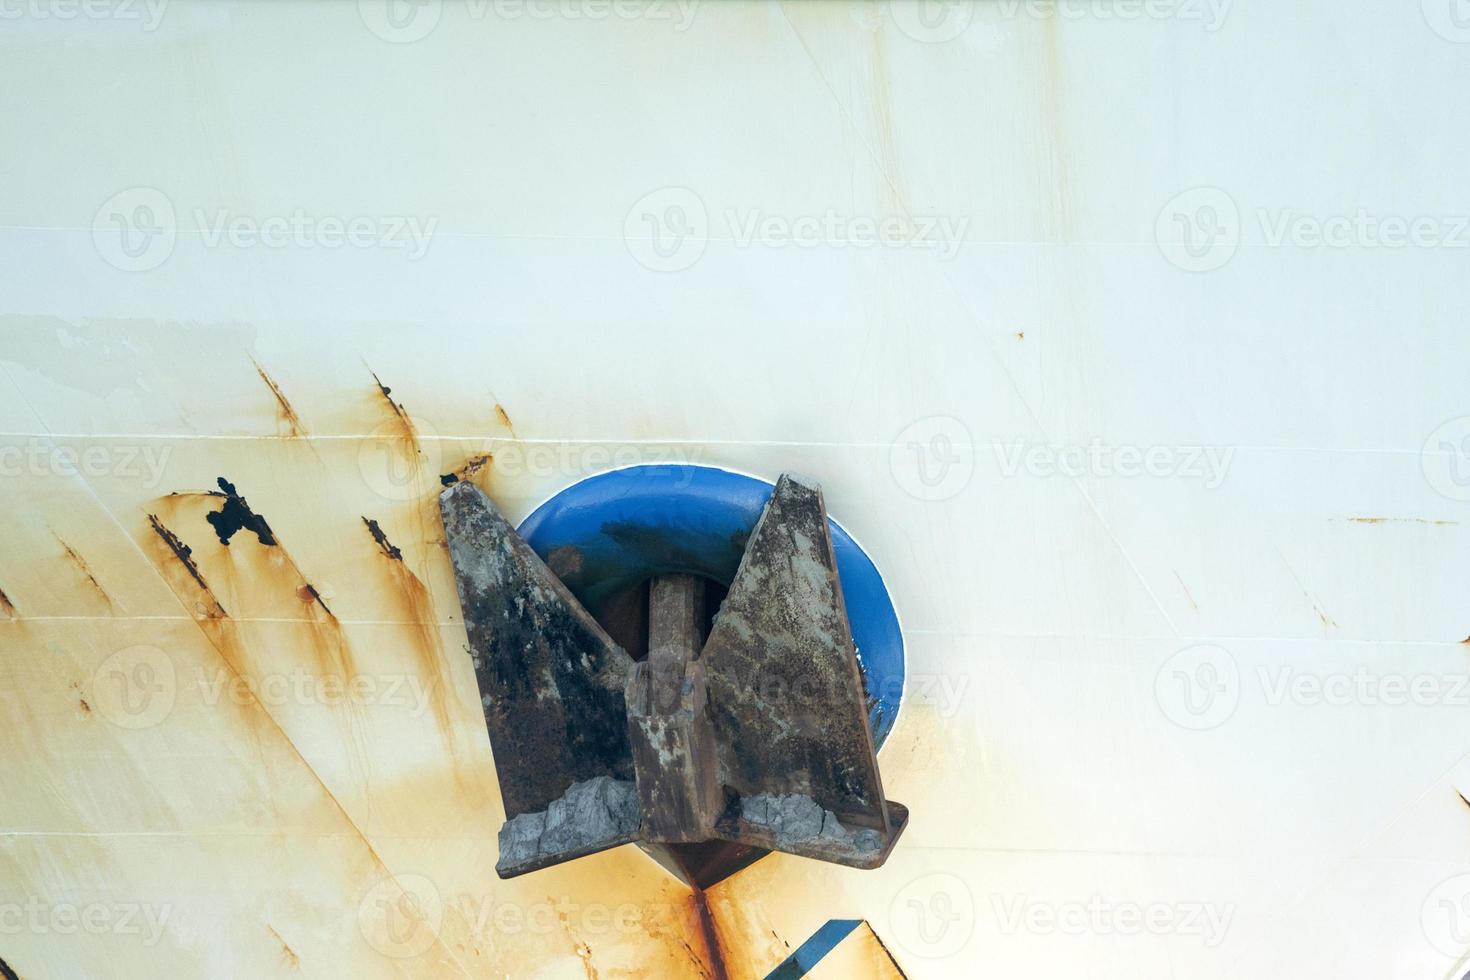 âncora áspera enferrujada no navio de pesca azul foto